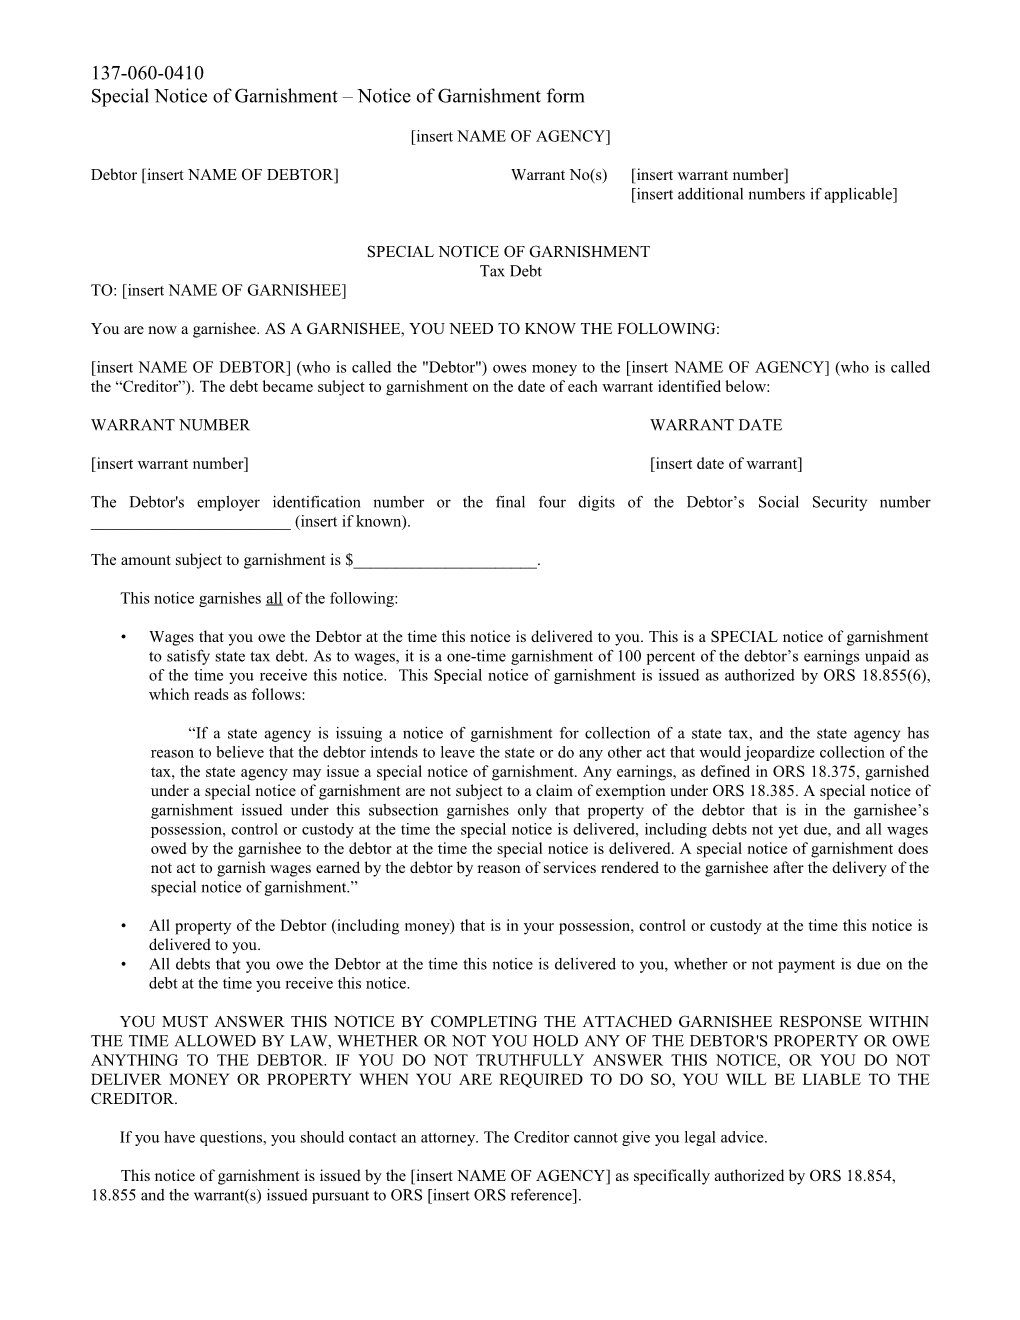 2008 Garnishment Rules/OAR 137-060-0410 Cc (Special Notice of Garnishment)